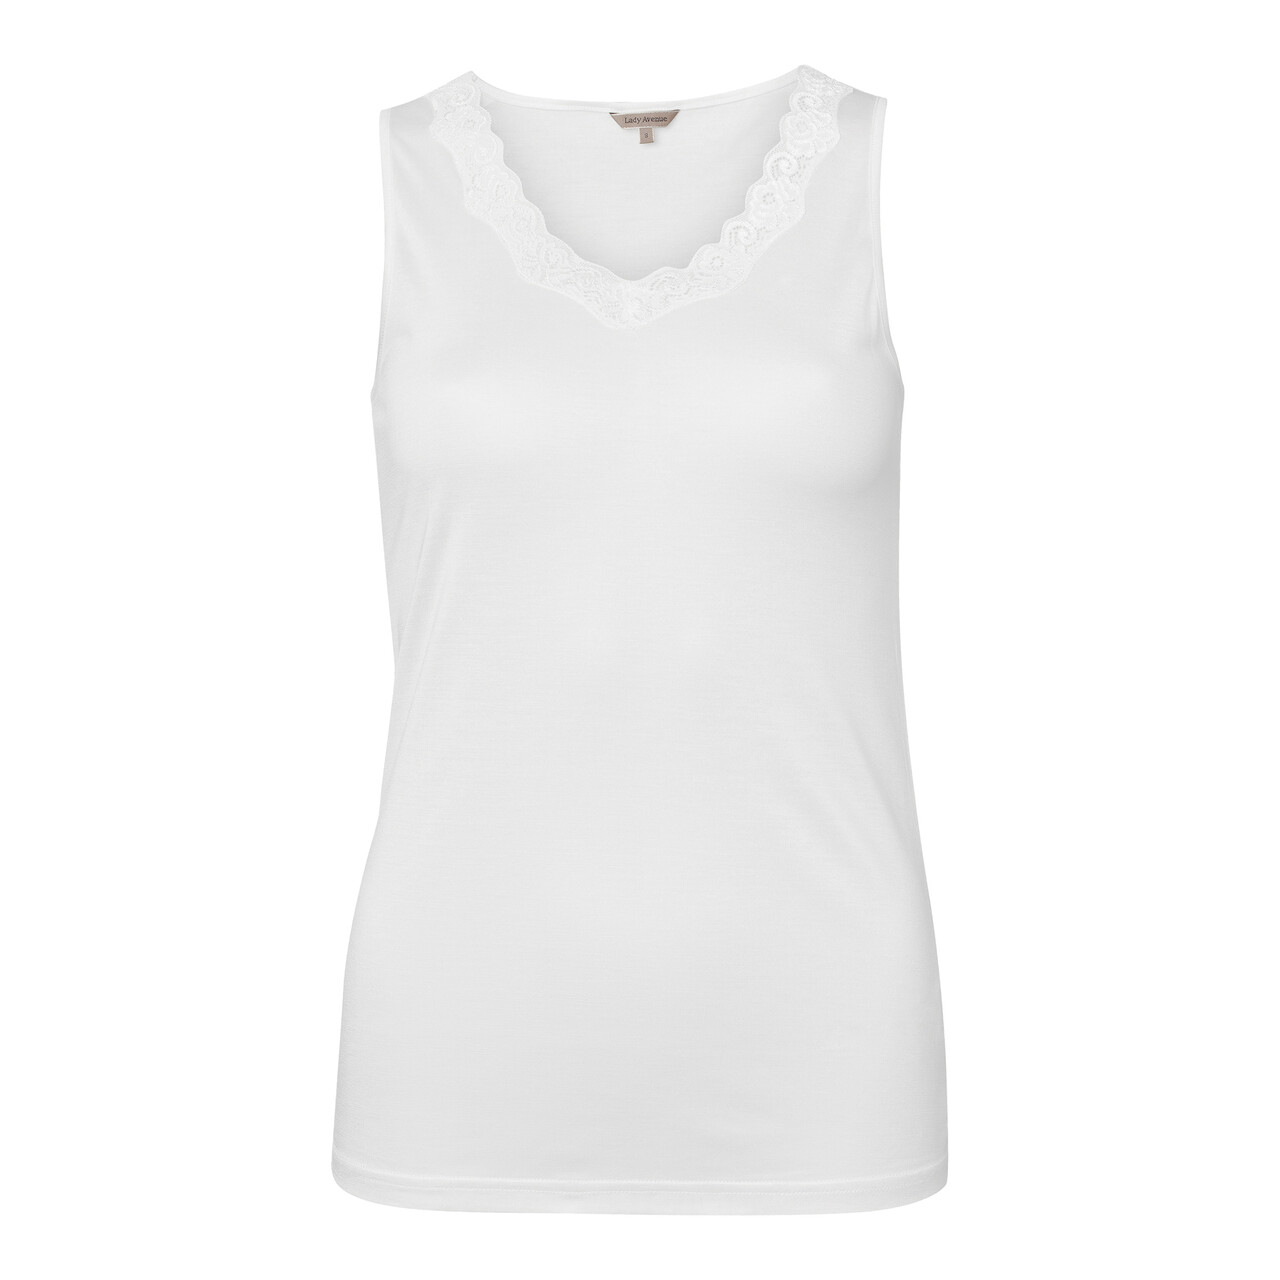 Se Lady Avenue Silk Jersey Top, Farve: Hvid, Størrelse: L, Dame hos Netlingeri.dk